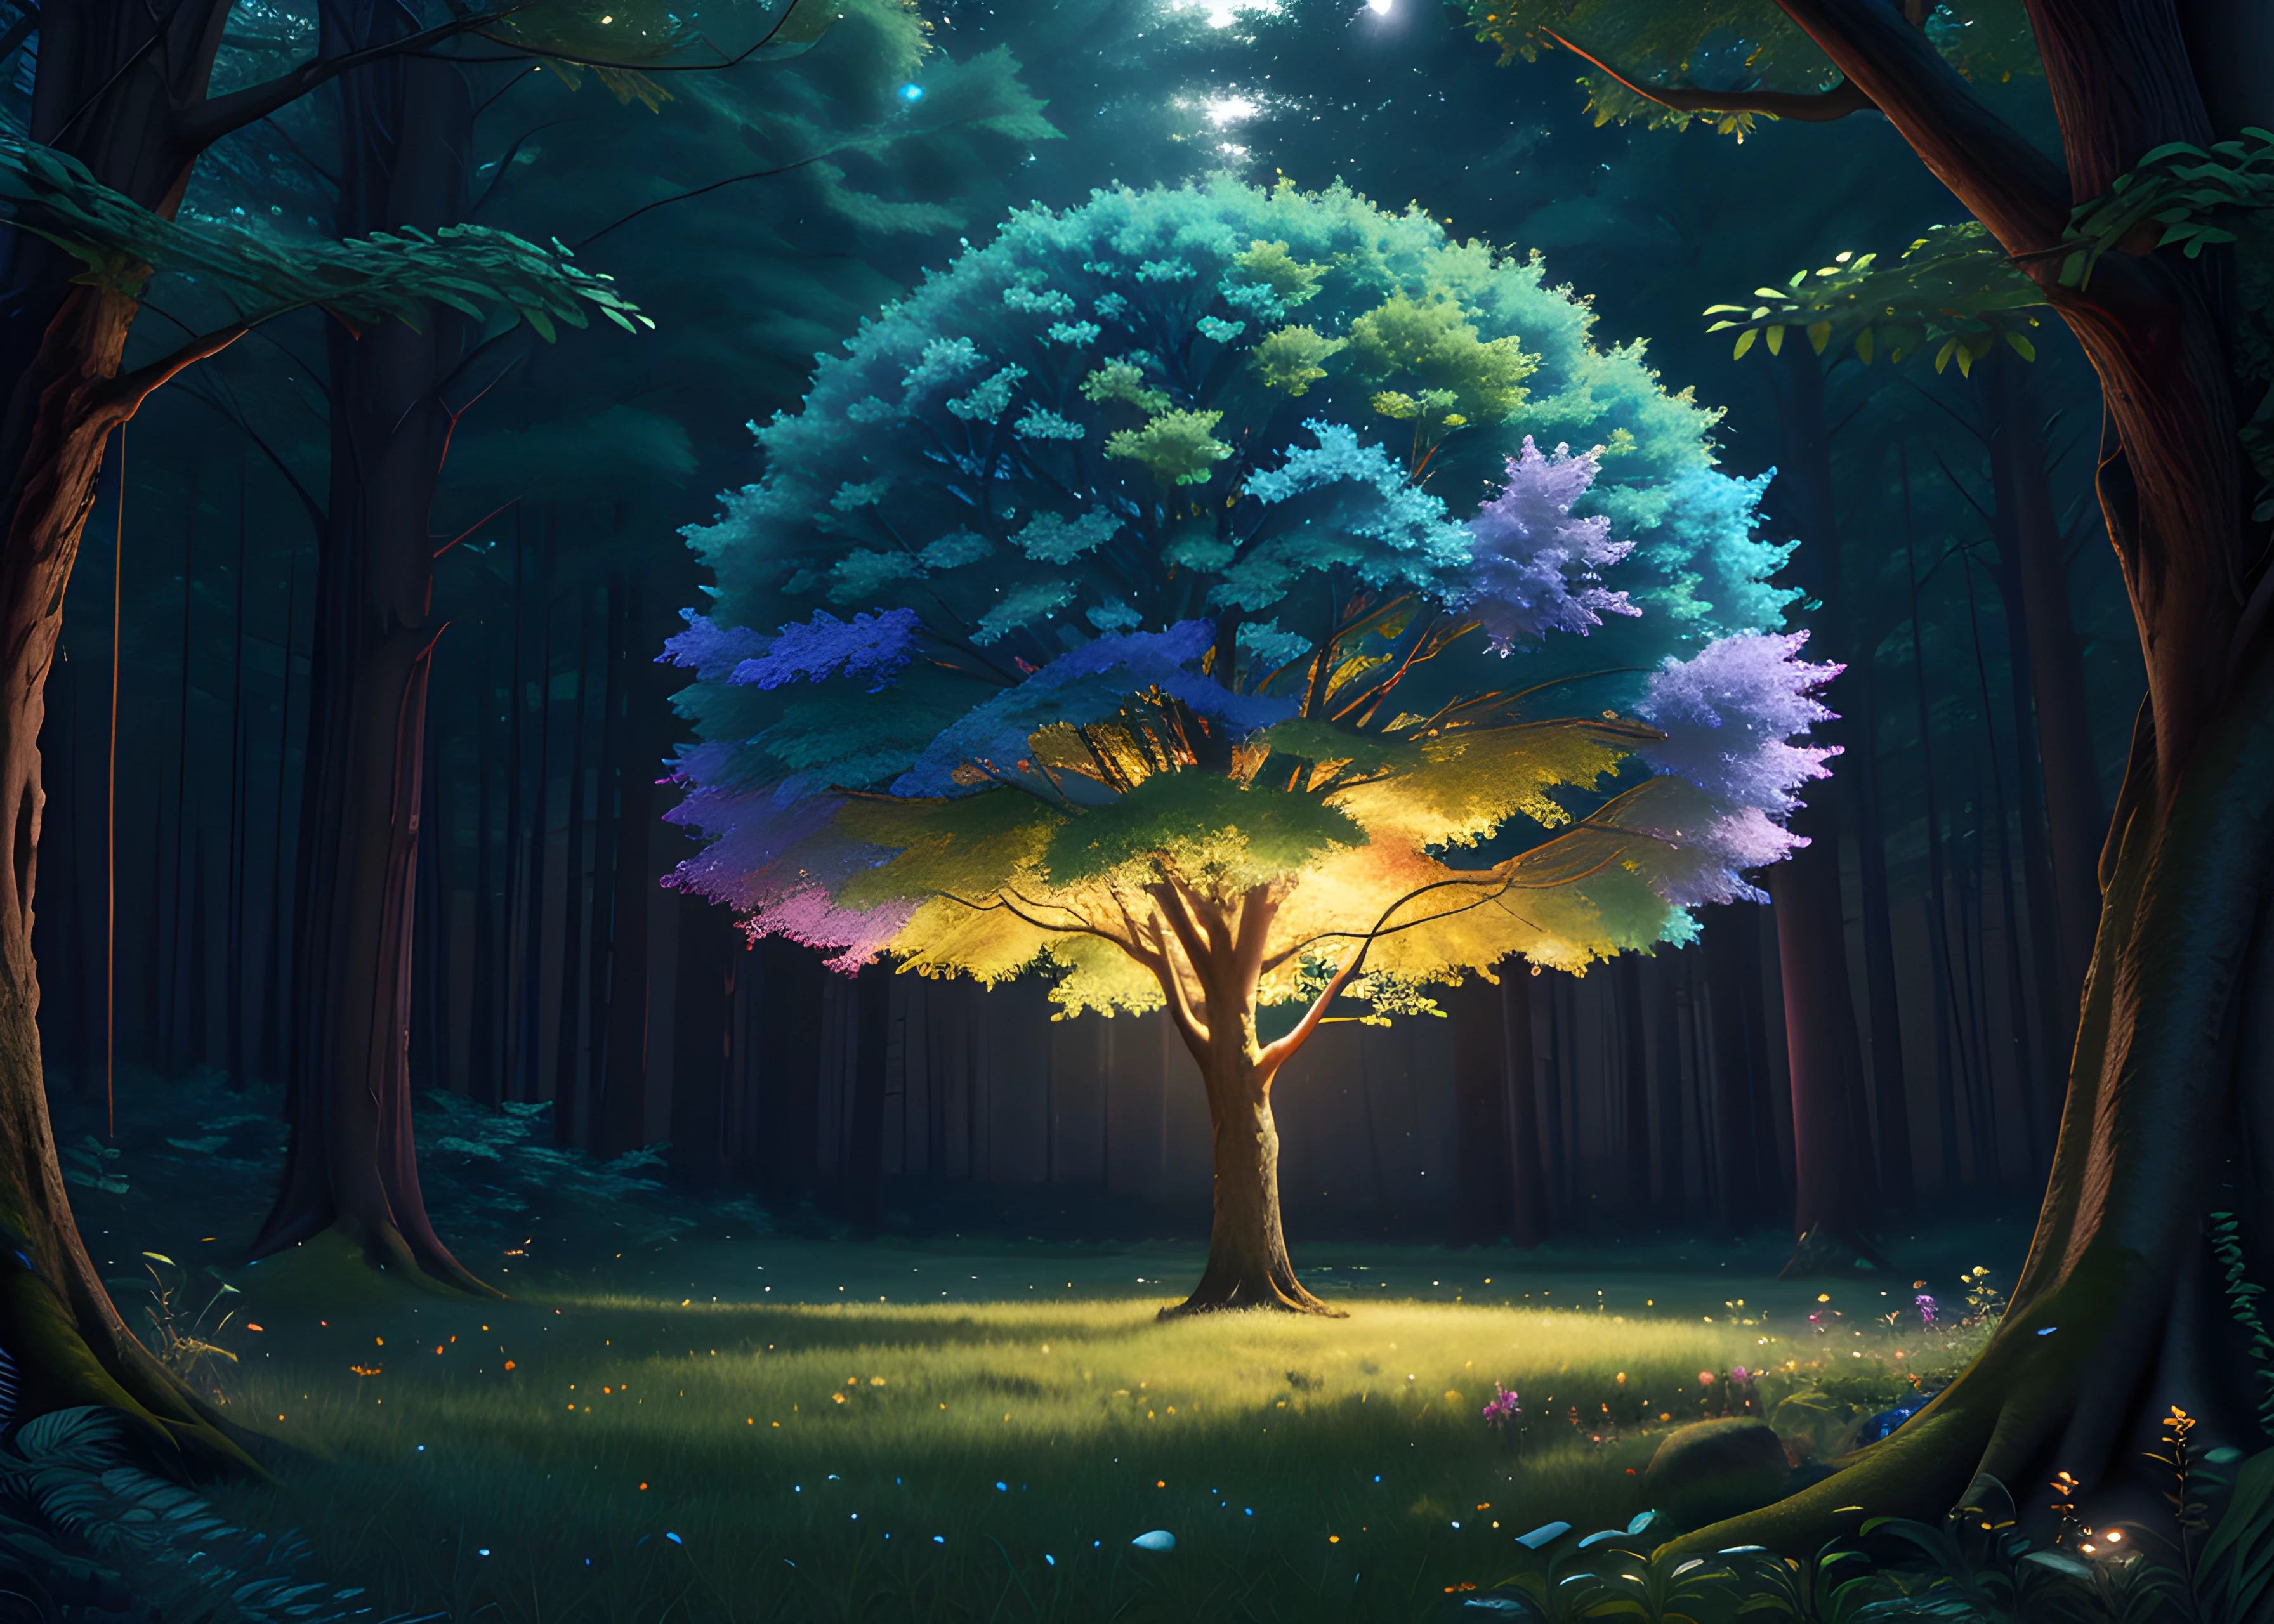 木, トリムライト, 非常に精細な8K, シェーディング, (ノイズ除去:0.6), 高解像度, 傑作, 1人の男の子, 8K, カラフルな抽象的な虹の感情, エレガント, 非常に詳細な, スタジオジブリ, サイドライト, 夜霧のかかった森の真ん中で